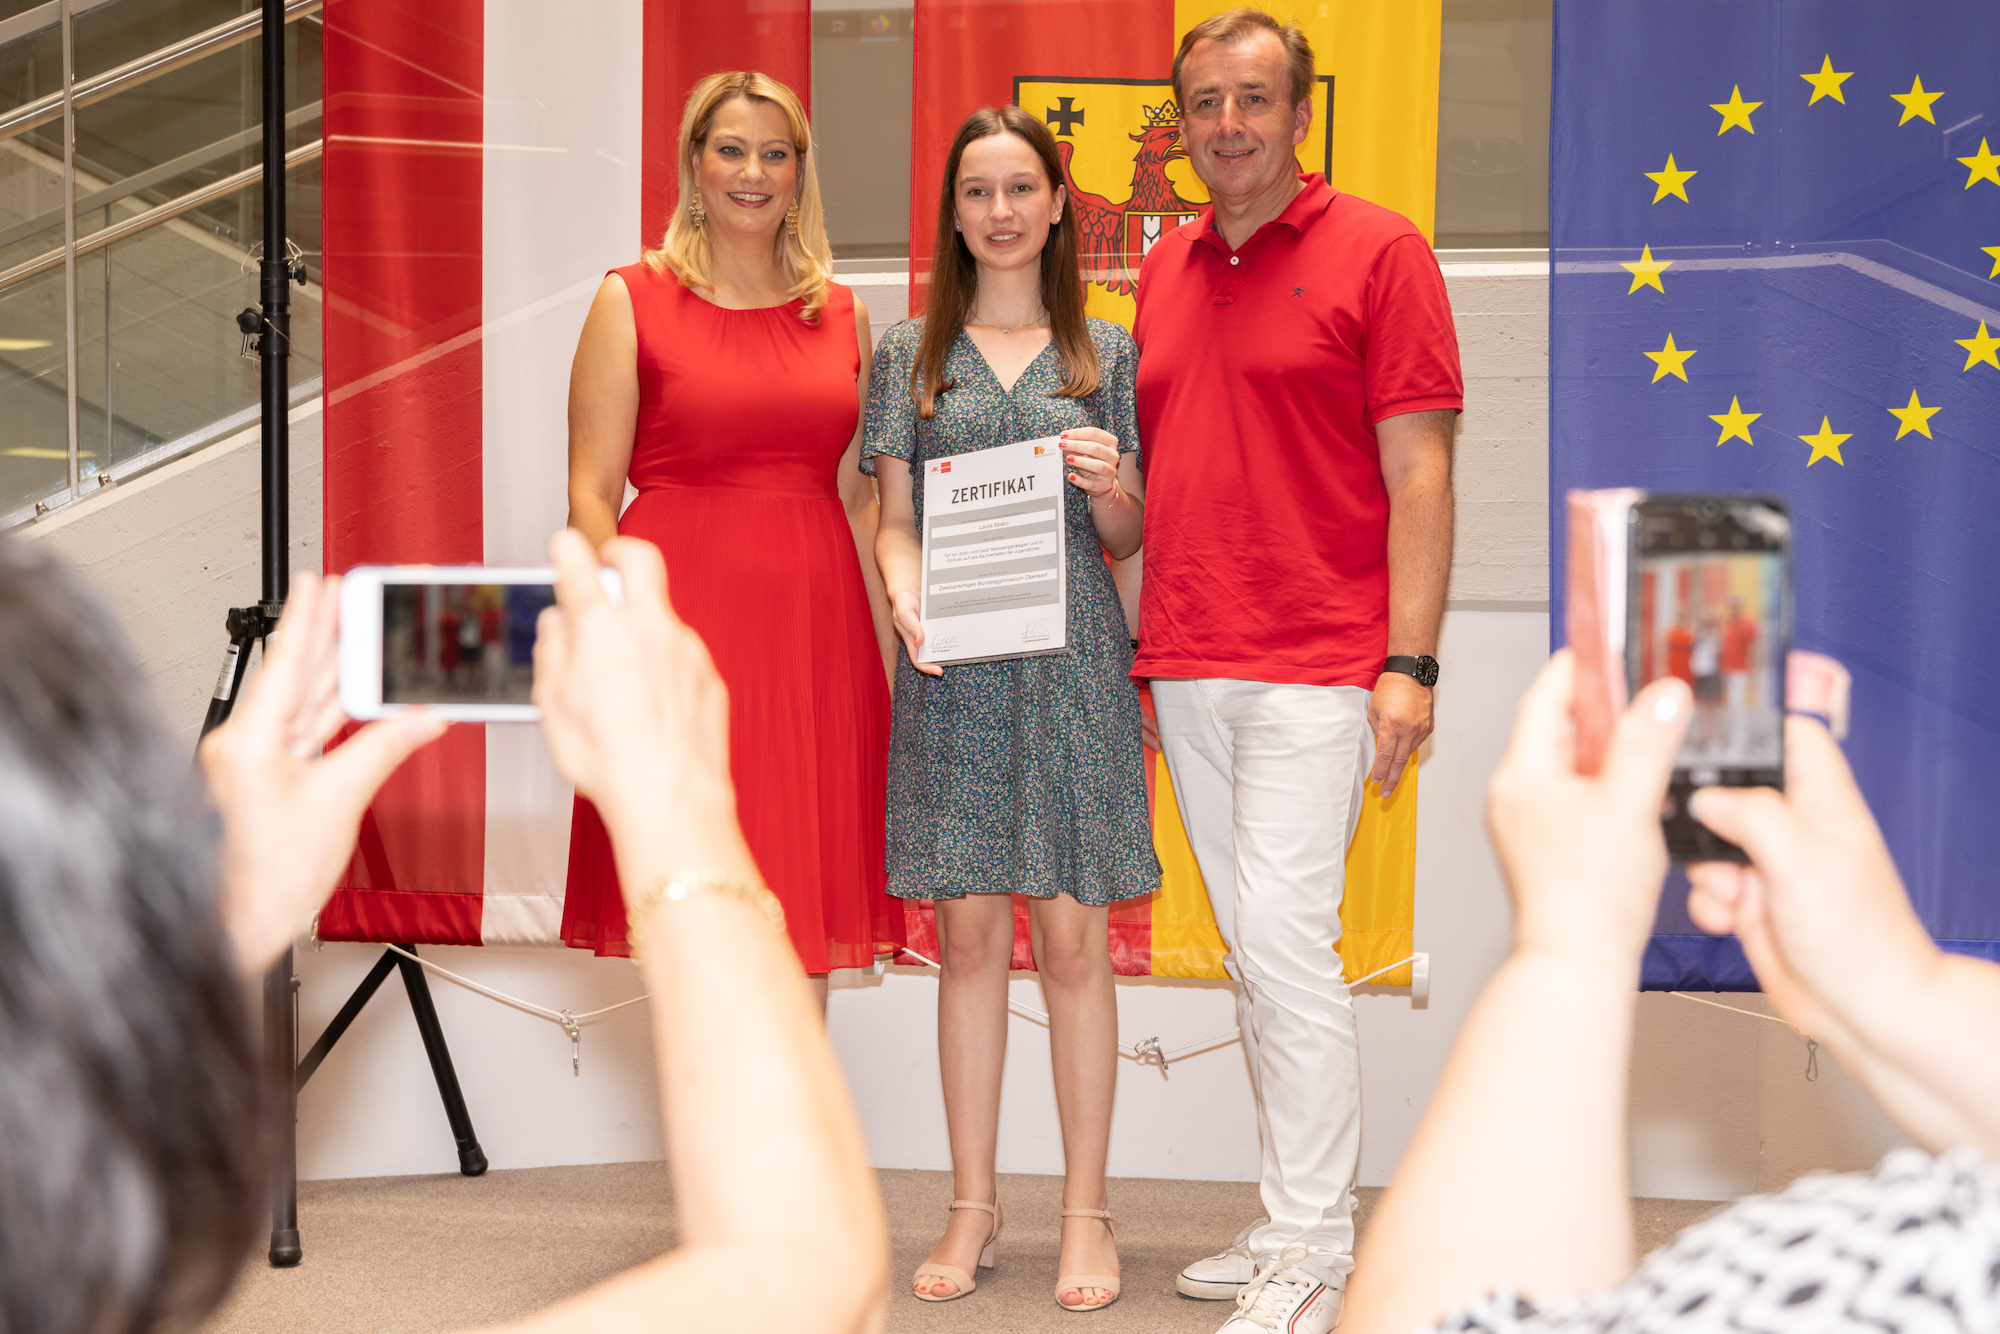 Schülerin der Schule "ZBG Oberwart" erhällt Zertifikat für ihre schriftliche Arbeit ""Ich bin doch nicht blöd" Marketingstrategien und ihr Einfluss auf das Kaufverhalten der Jugendlichen".